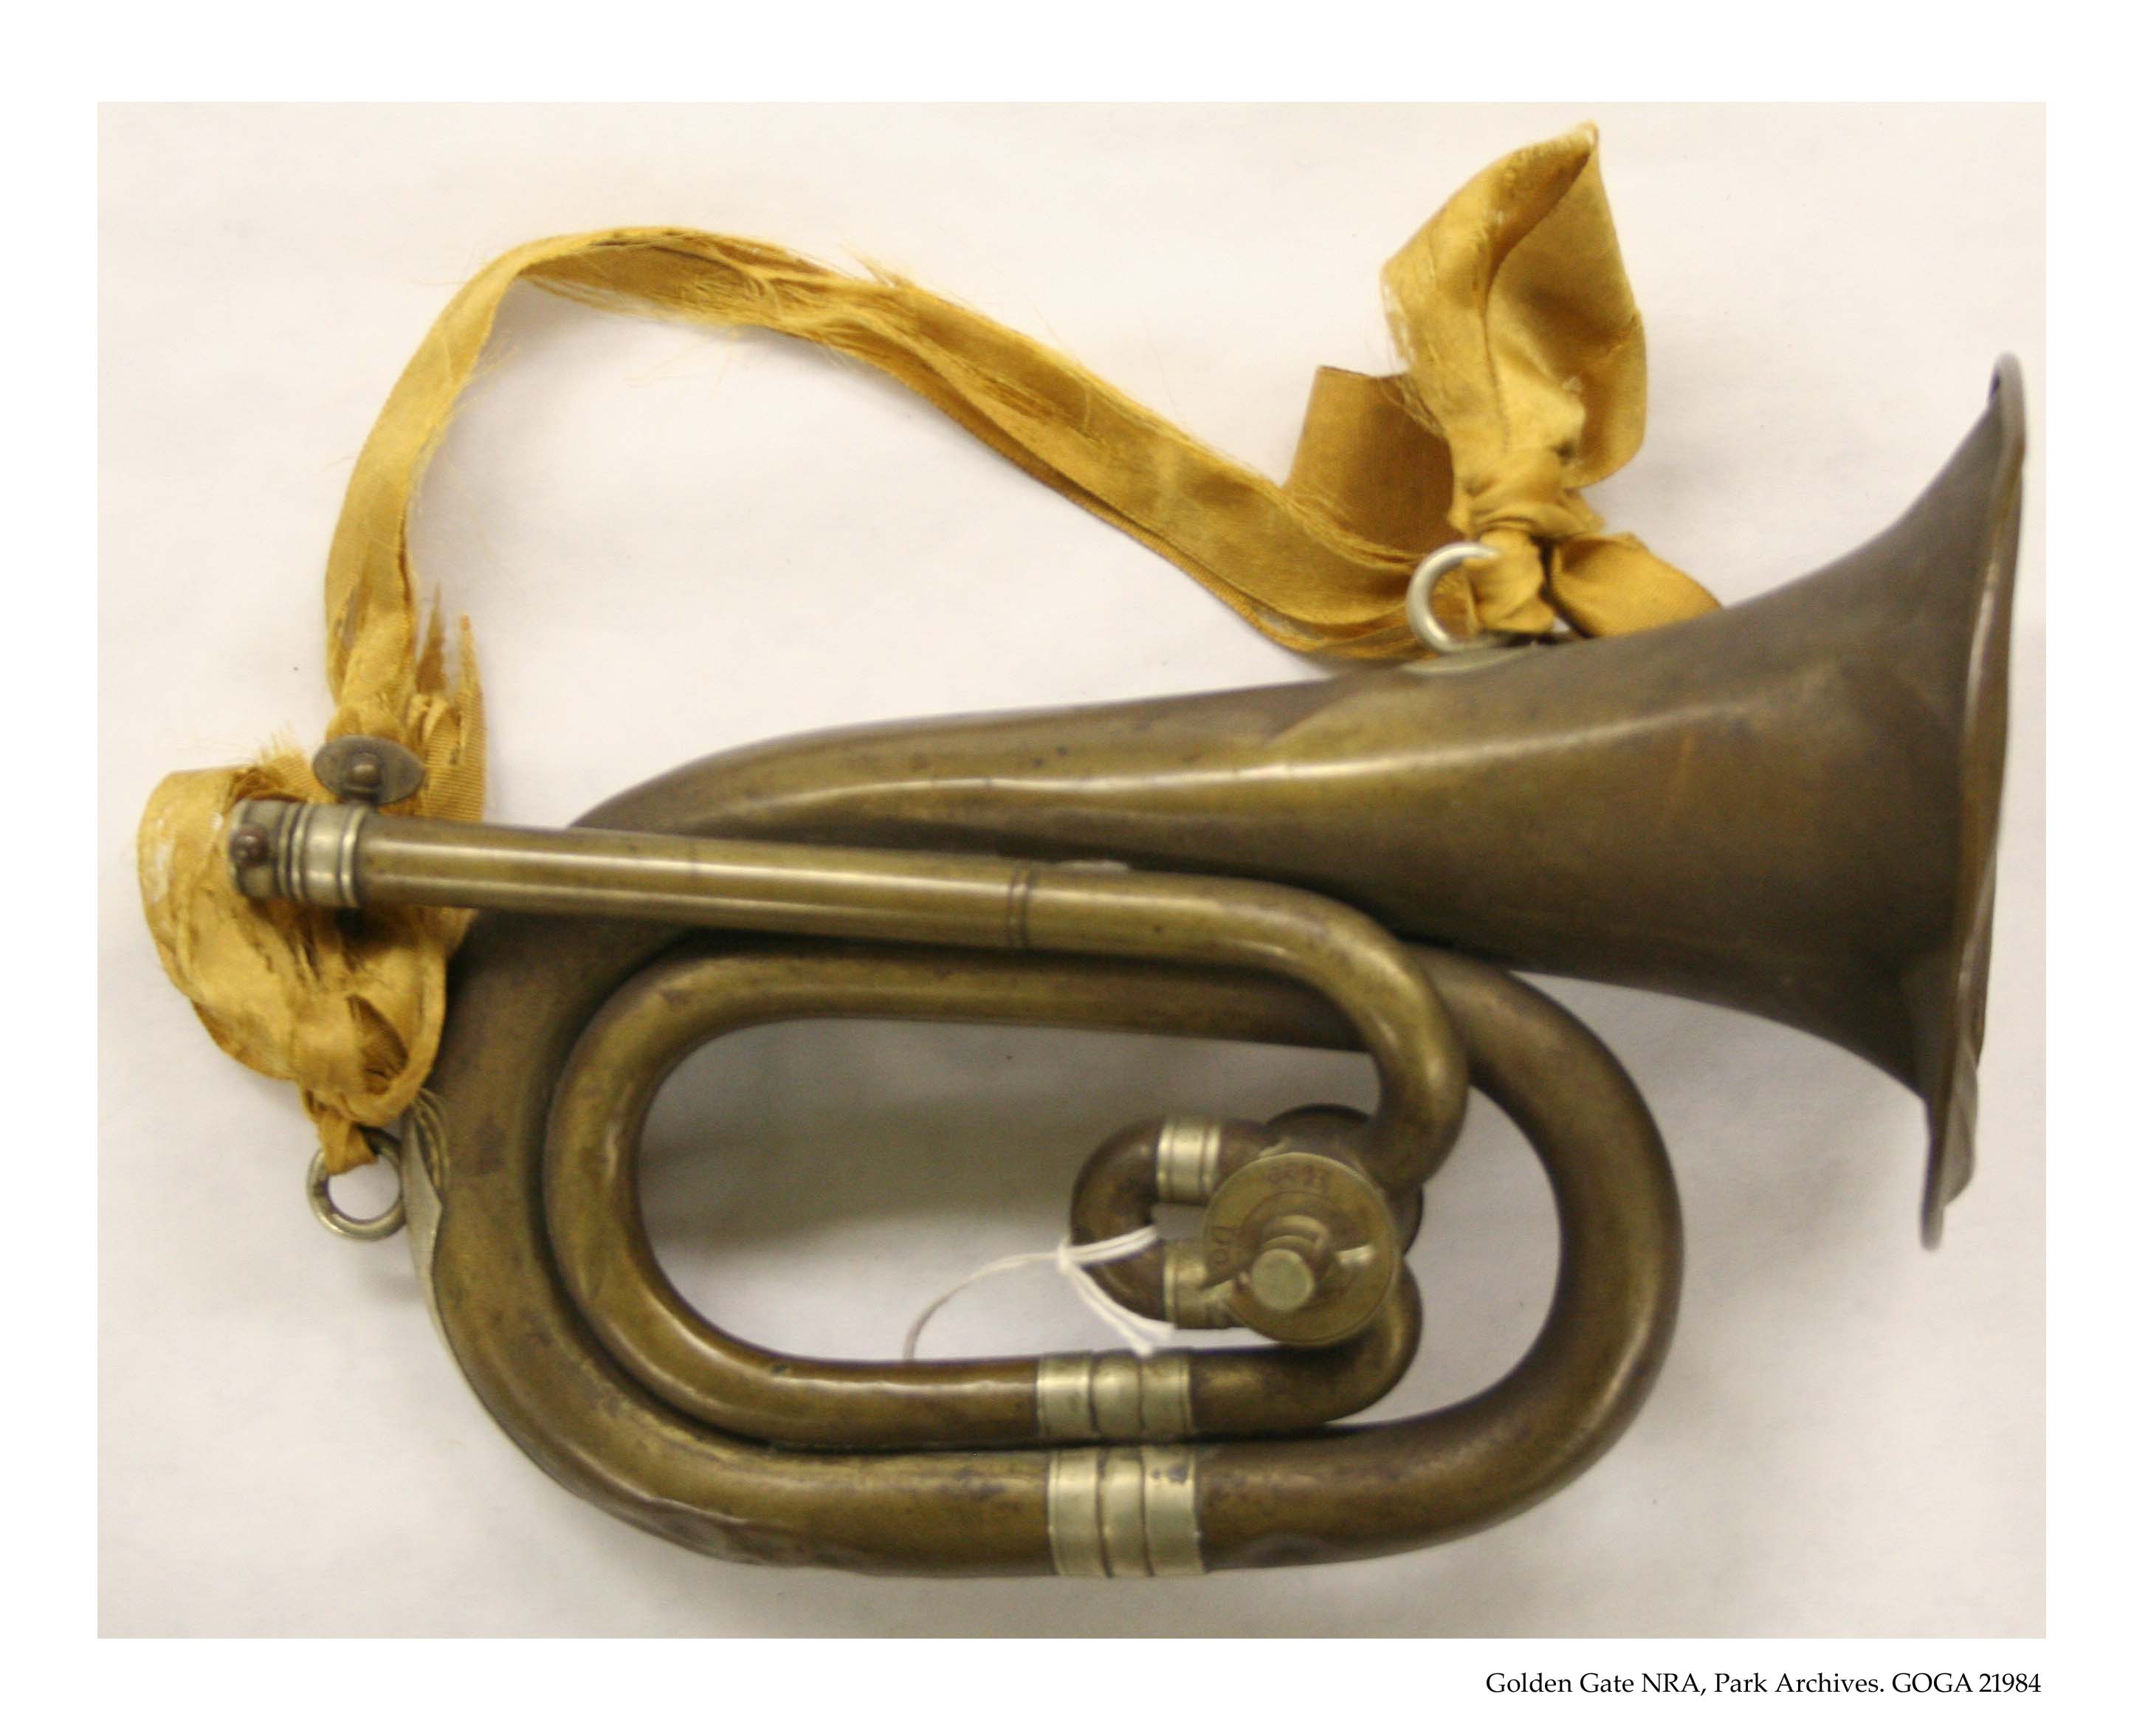 GOGA 21984, Spanish-American War bugle